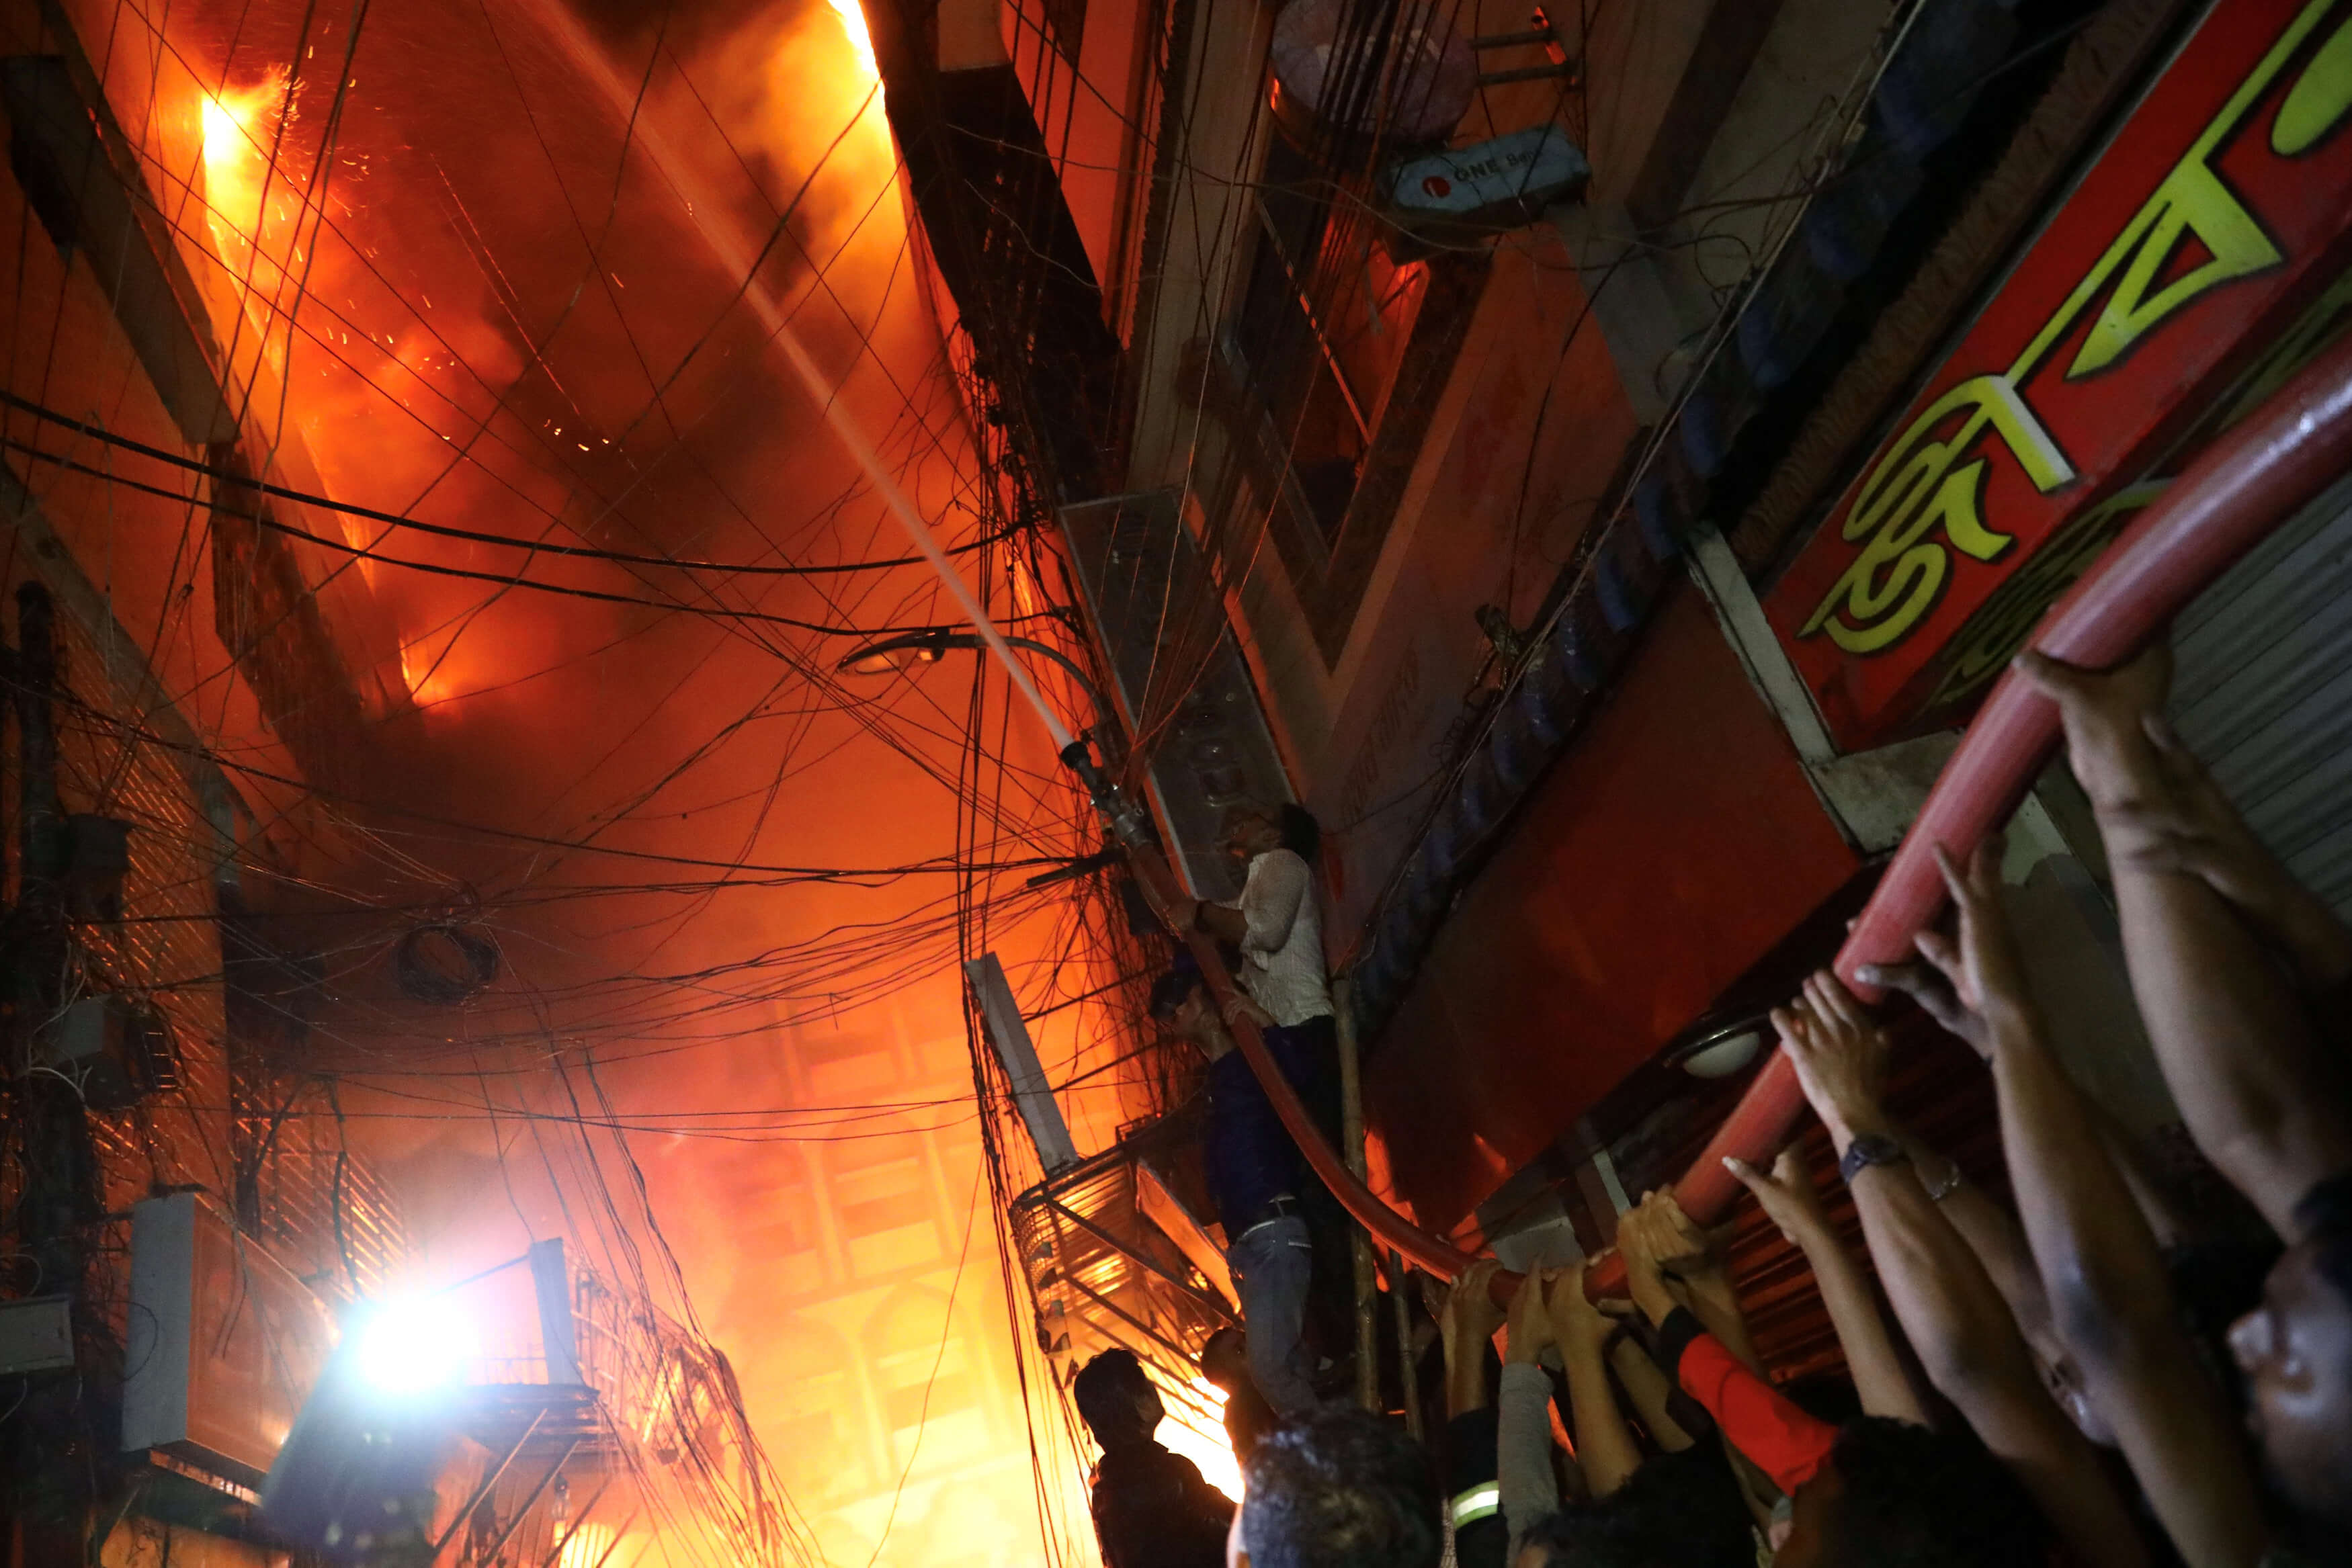 Foto: Un incendio en almacén de productos químicos consume varios edificios en Daca, Bangladesh, el 20 de febrero de 2019